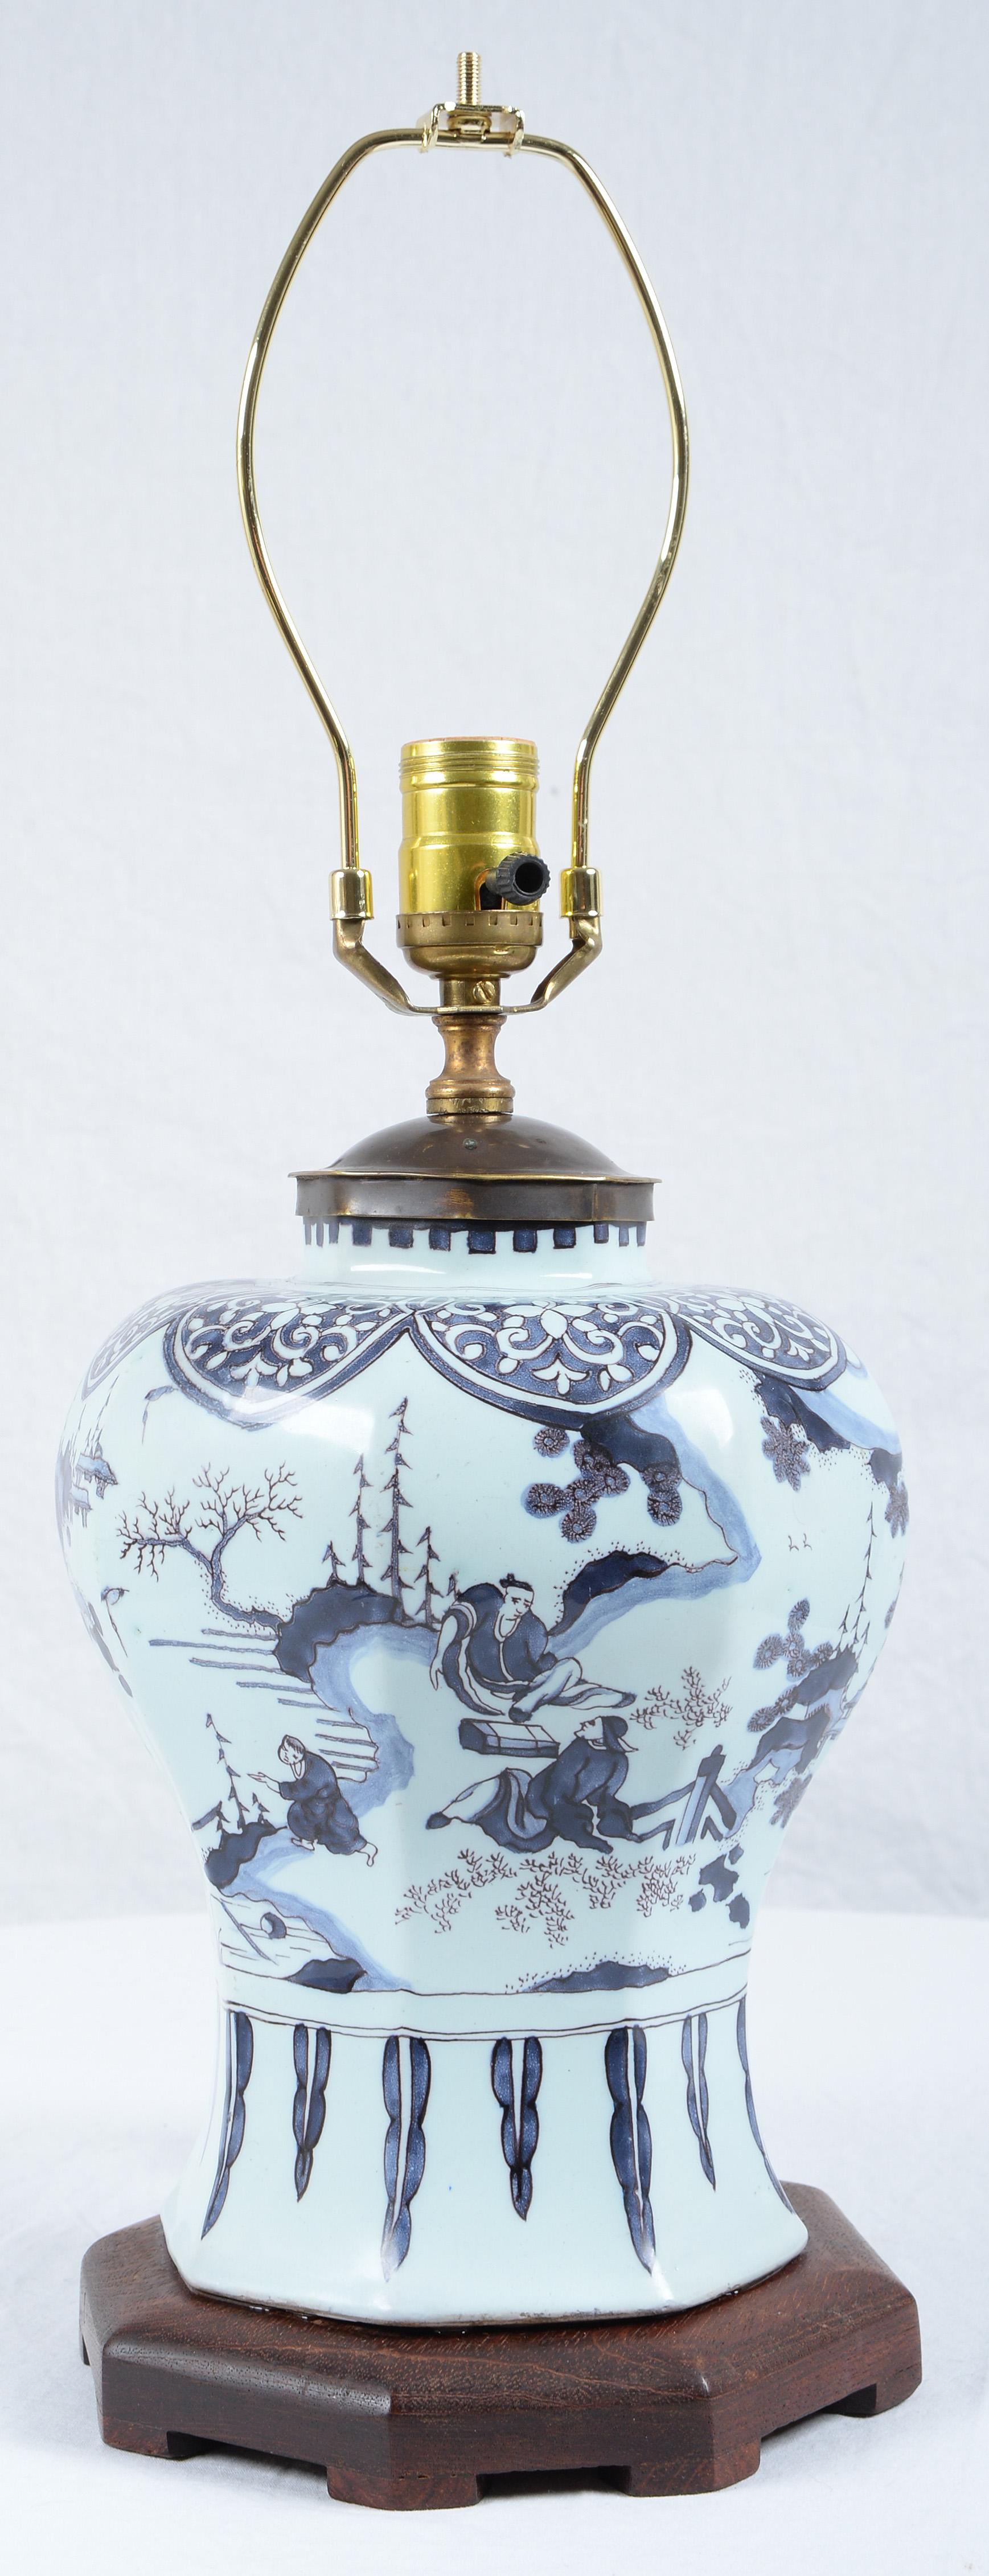 Fin du XVIIe siècle Grand vase balustre en faïence Delft bleu et blanc de Chinoiserie hollandaise Monté comme une lampe et nouvellement électrifié.
De forme octogonale, décorée de figures orientales dans un paysage.
Les dimensions indiquées ici